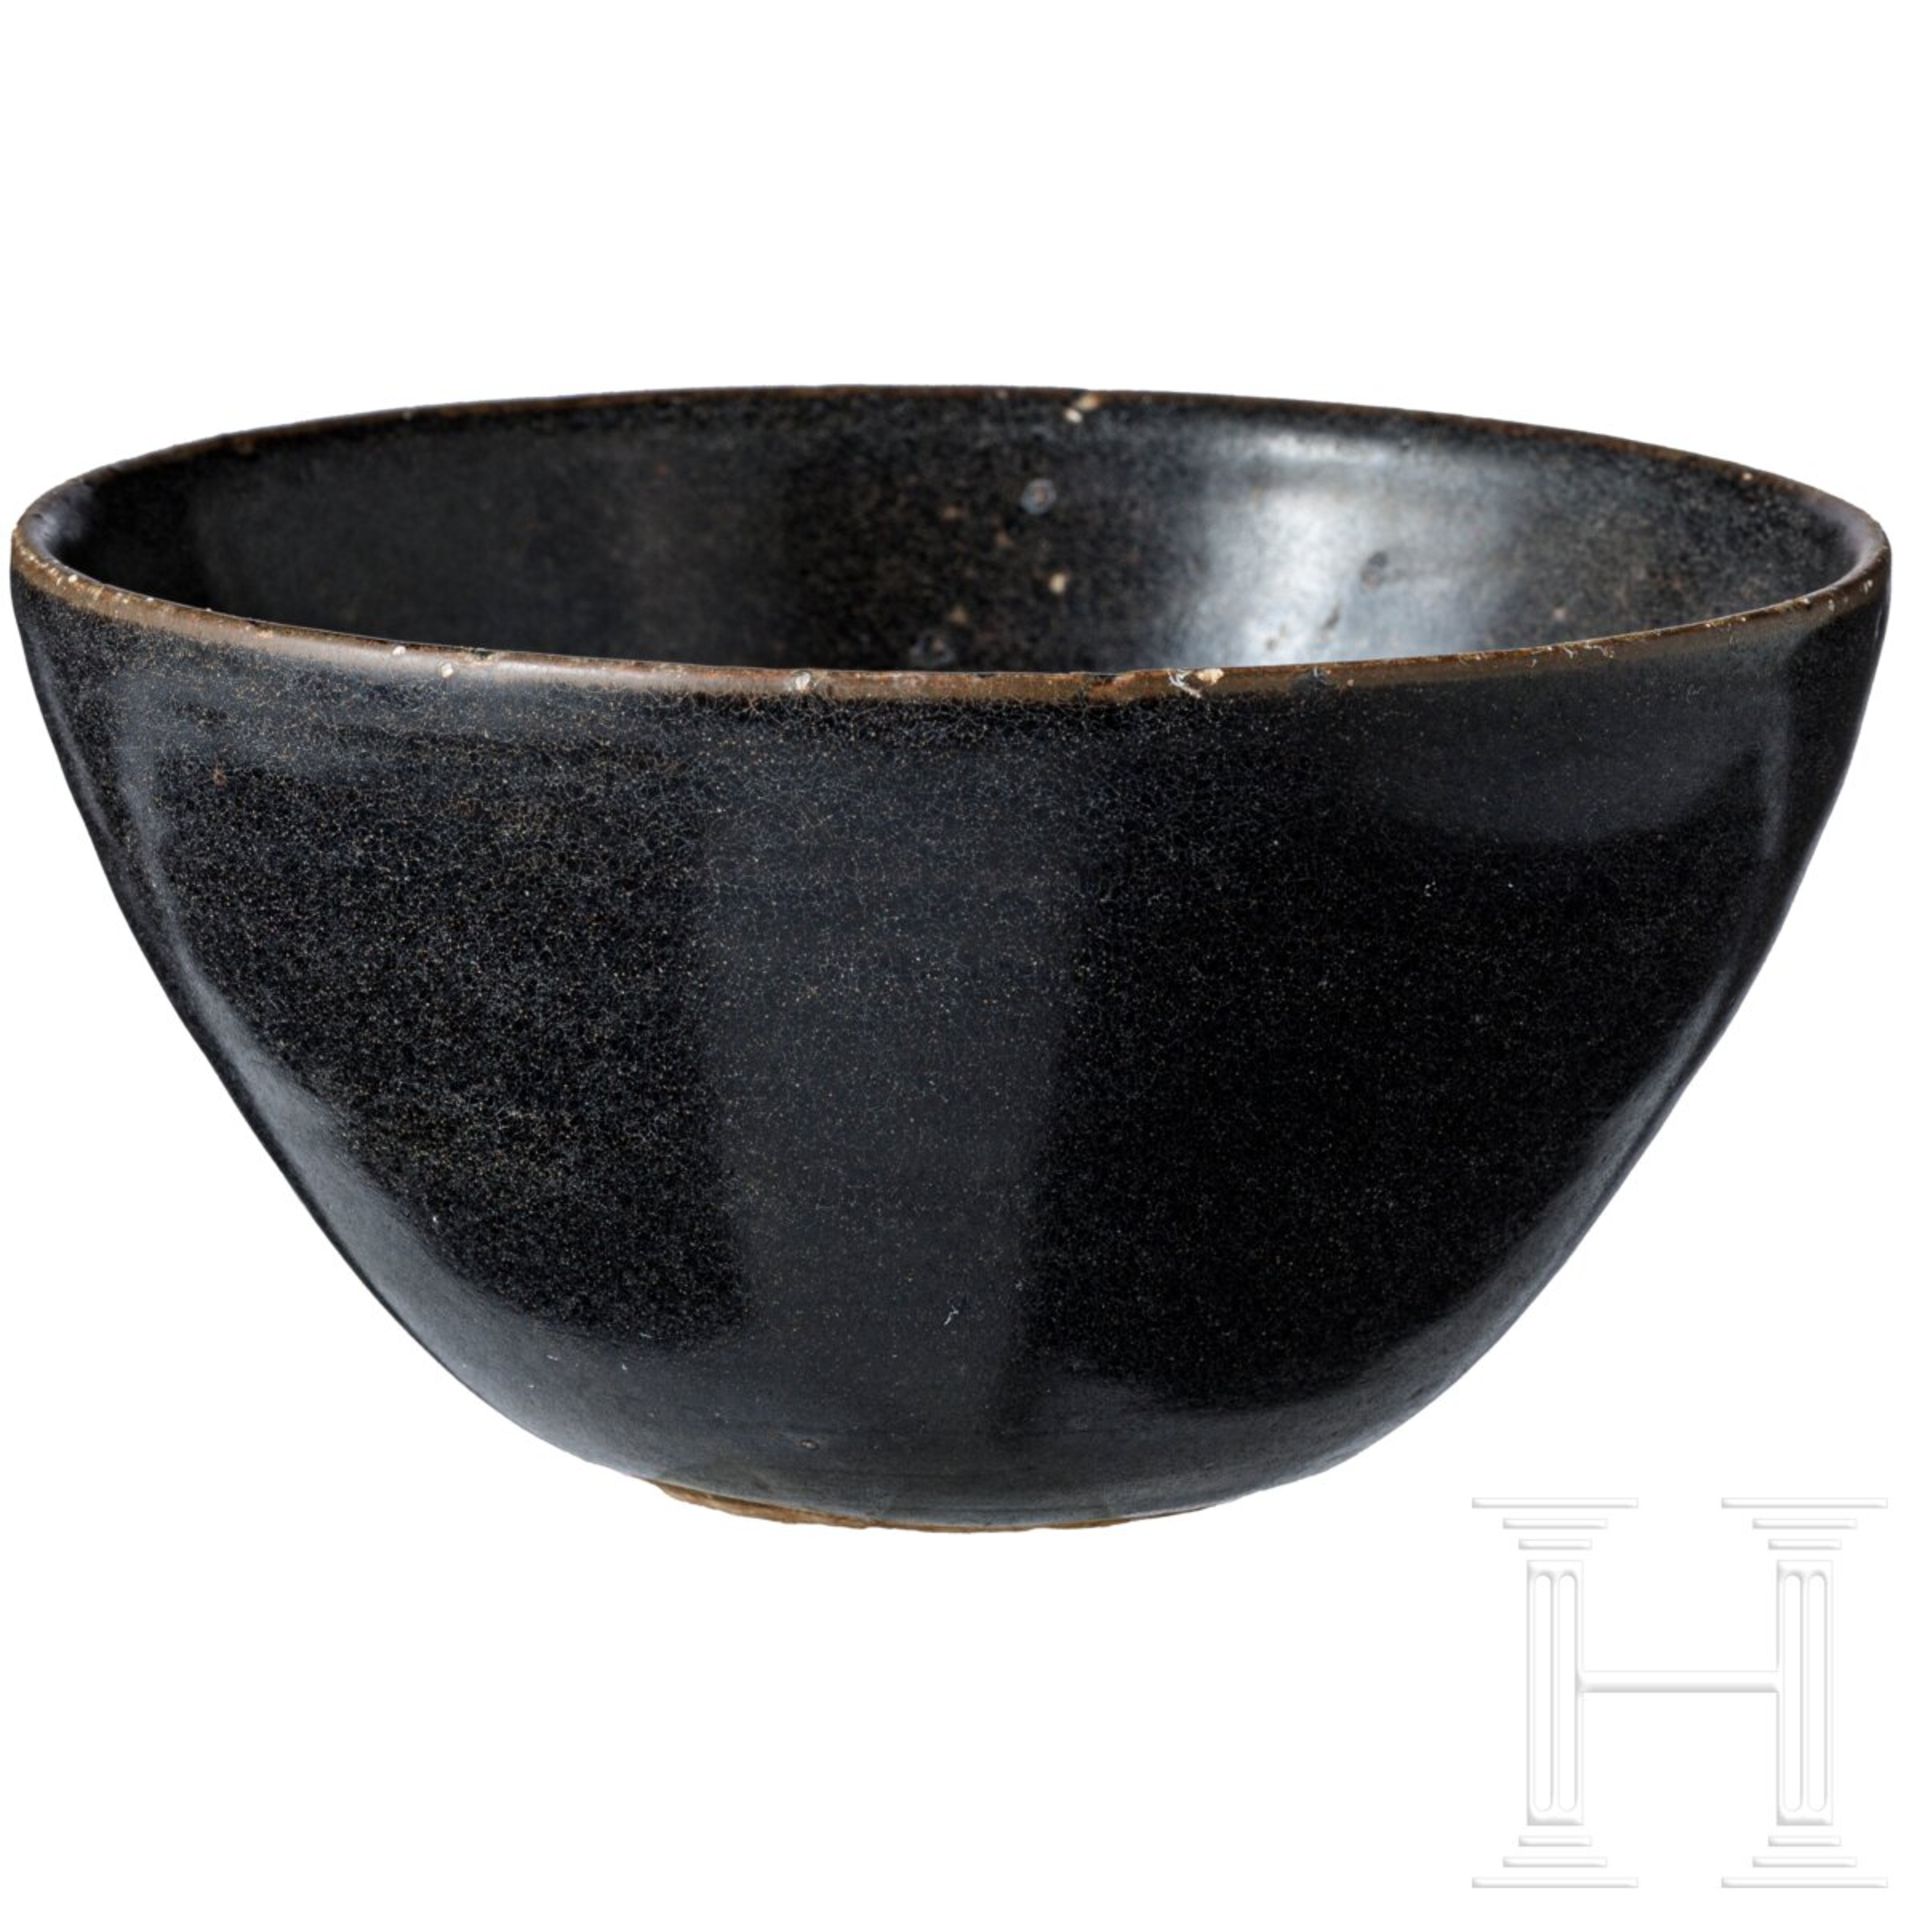 Jizhou-Teeschale, schwarz glasiert, südliche Song-Dynastie (12. - 13. Jhdt.) - Bild 4 aus 17